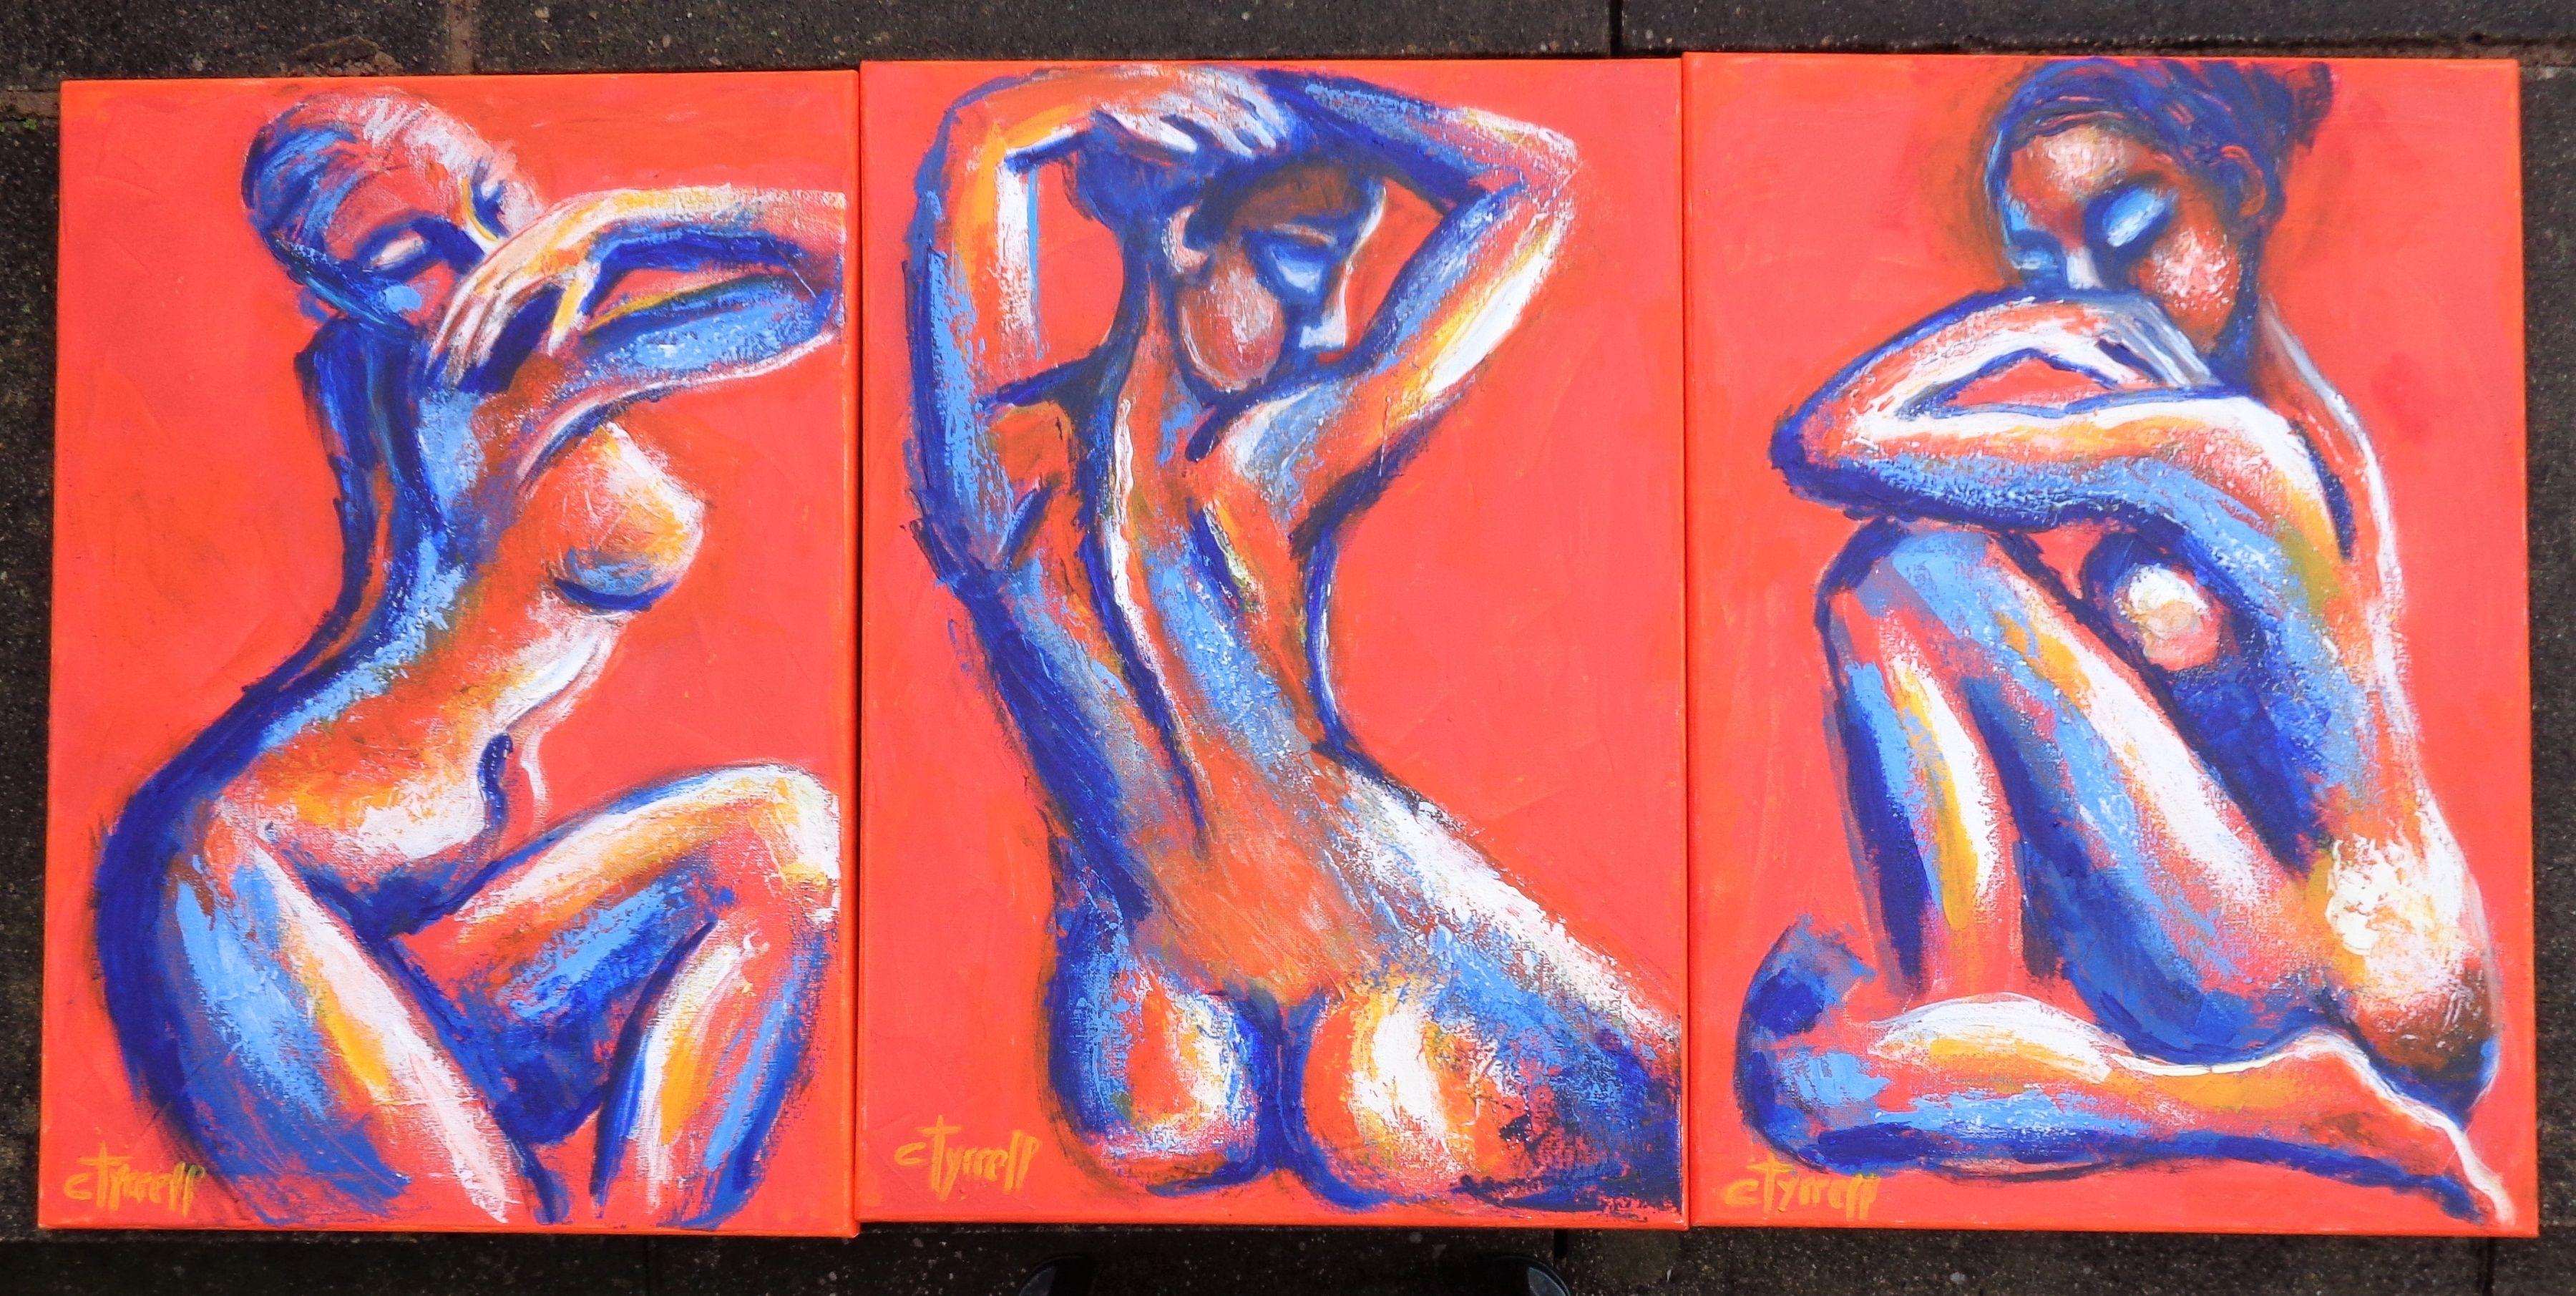 Peinture acrylique figurative contemporaine originale sur toile, bords peints et prête à être accrochée. Fait partie d'une nouvelle série de 3 personnages nus, vue de face, de profil et de dos, à dominante orange. Peinture semi-abstraite colorée et